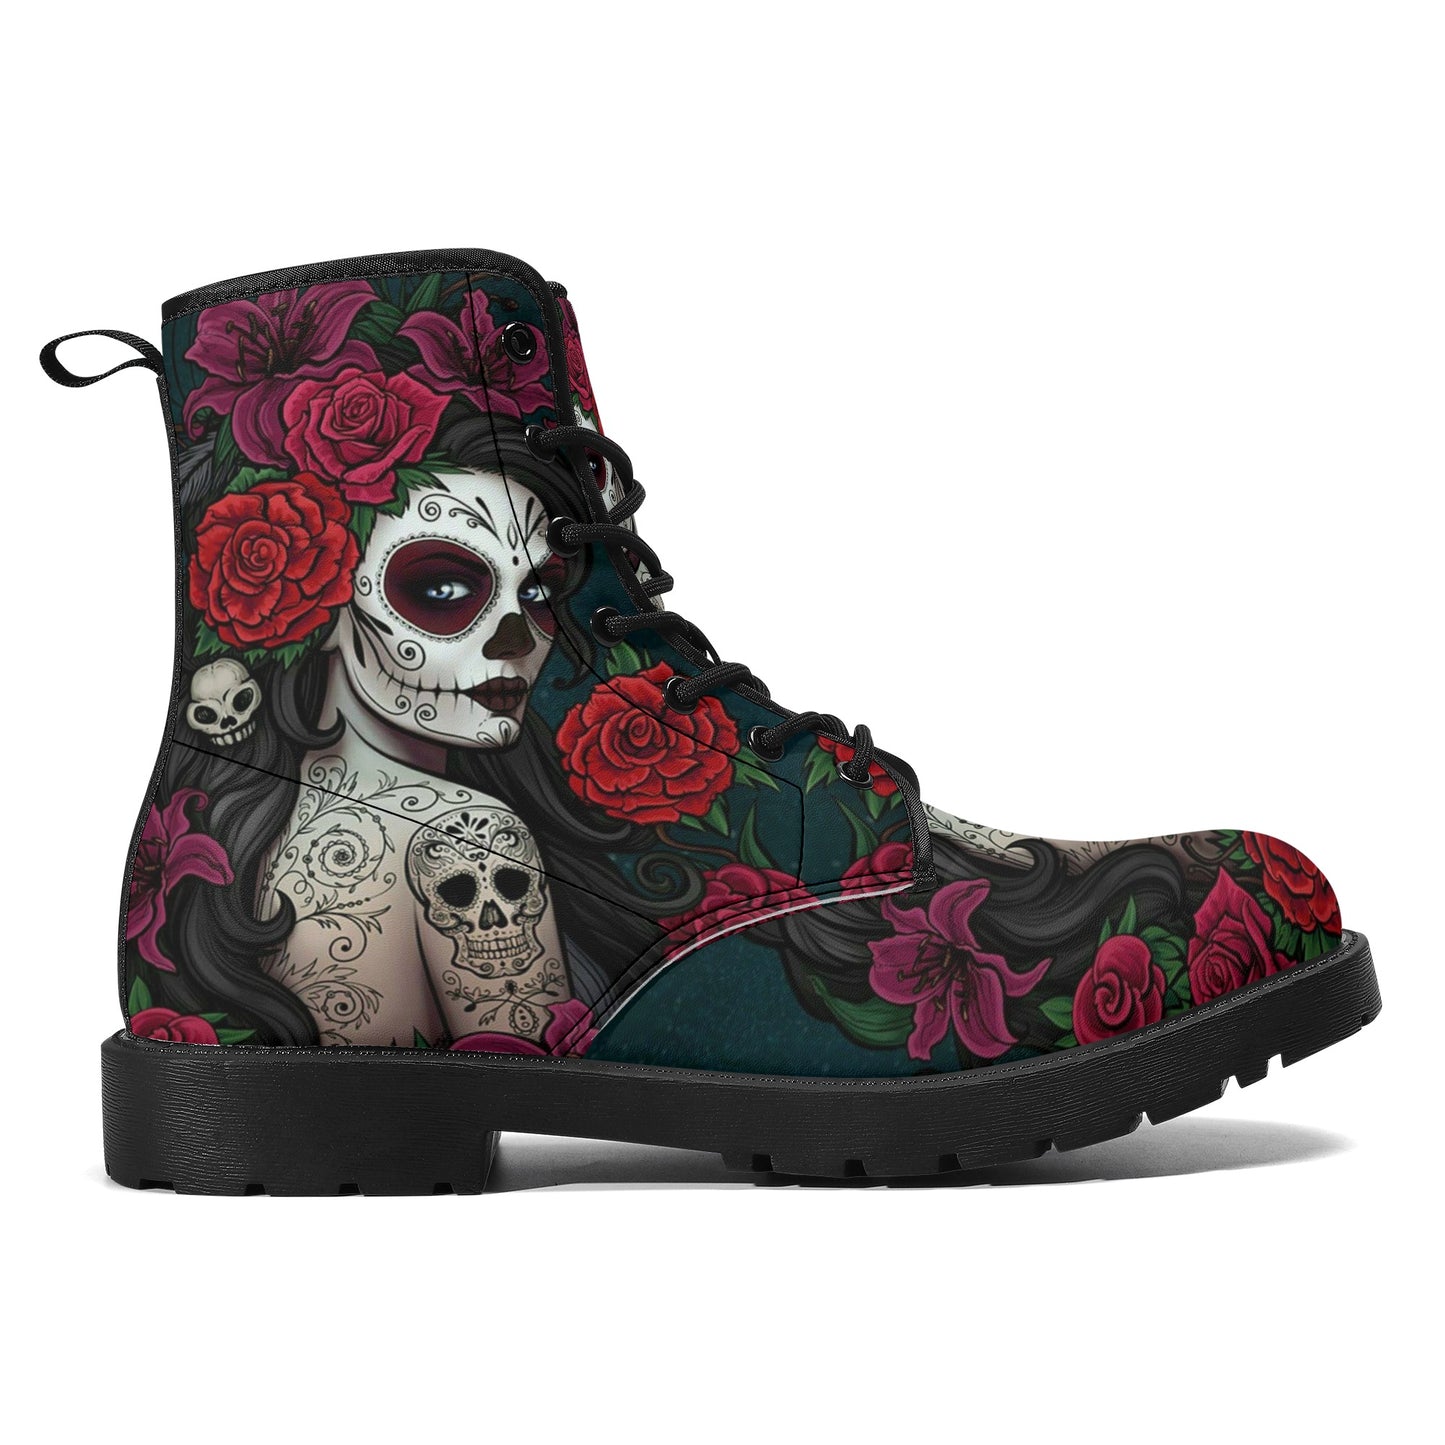 Sugar skull winter boots, sugar skull girl combat boots, cinco de mayo skull boots for men women, floral sugar skull men women shoes, sugar